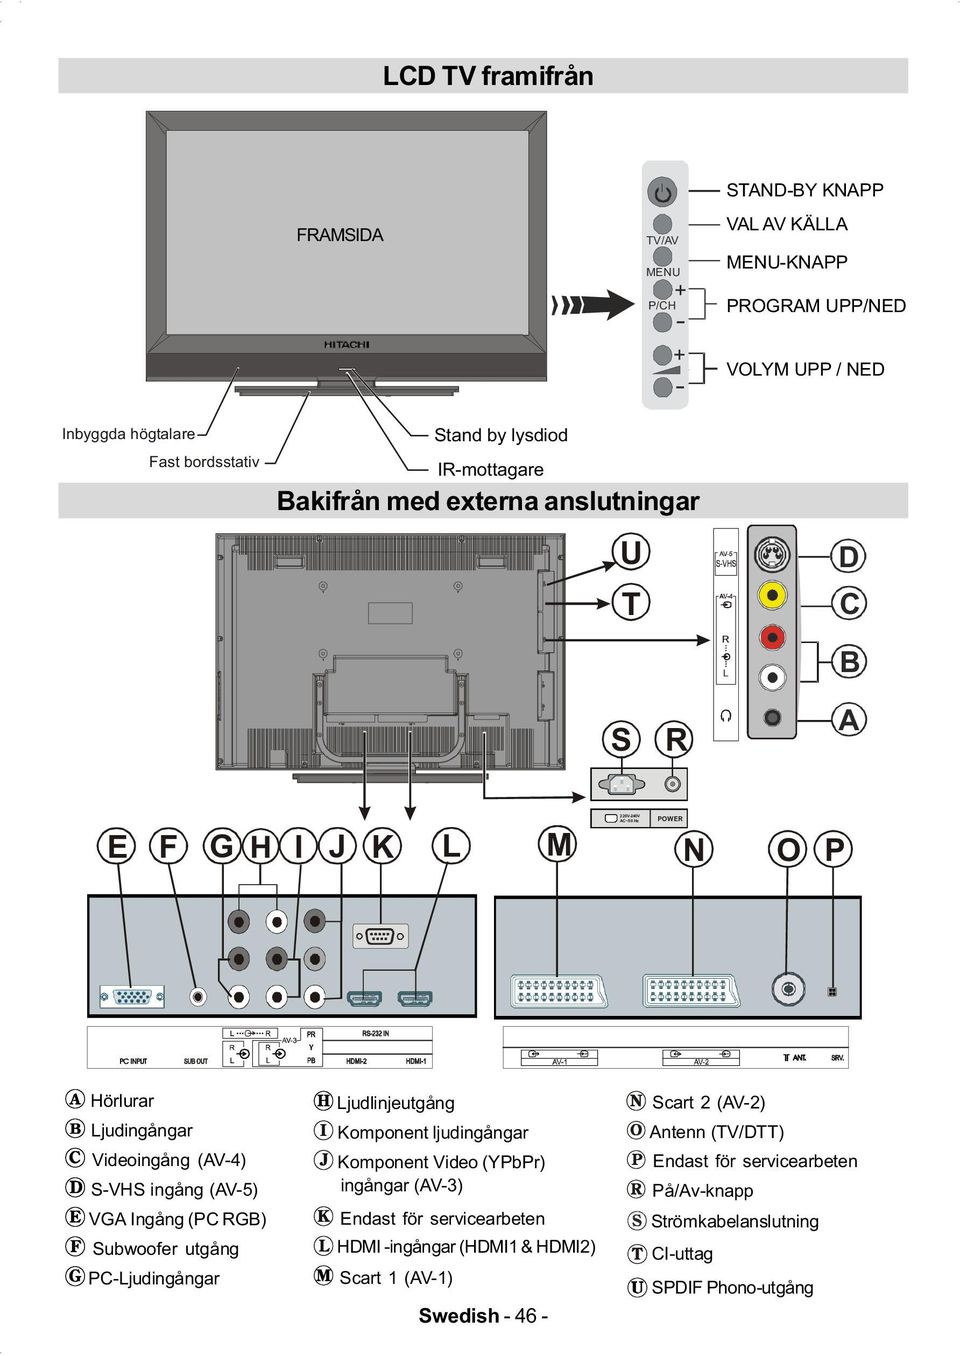 (AV-5) VGA Ingång (PC RGB) Subwoofer utgång PC-Ljudingångar Ljudlinjeutgång Komponent ljudingångar Komponent Video (YPbPr) ingångar (AV-3) Endast för servicearbeten HDMI